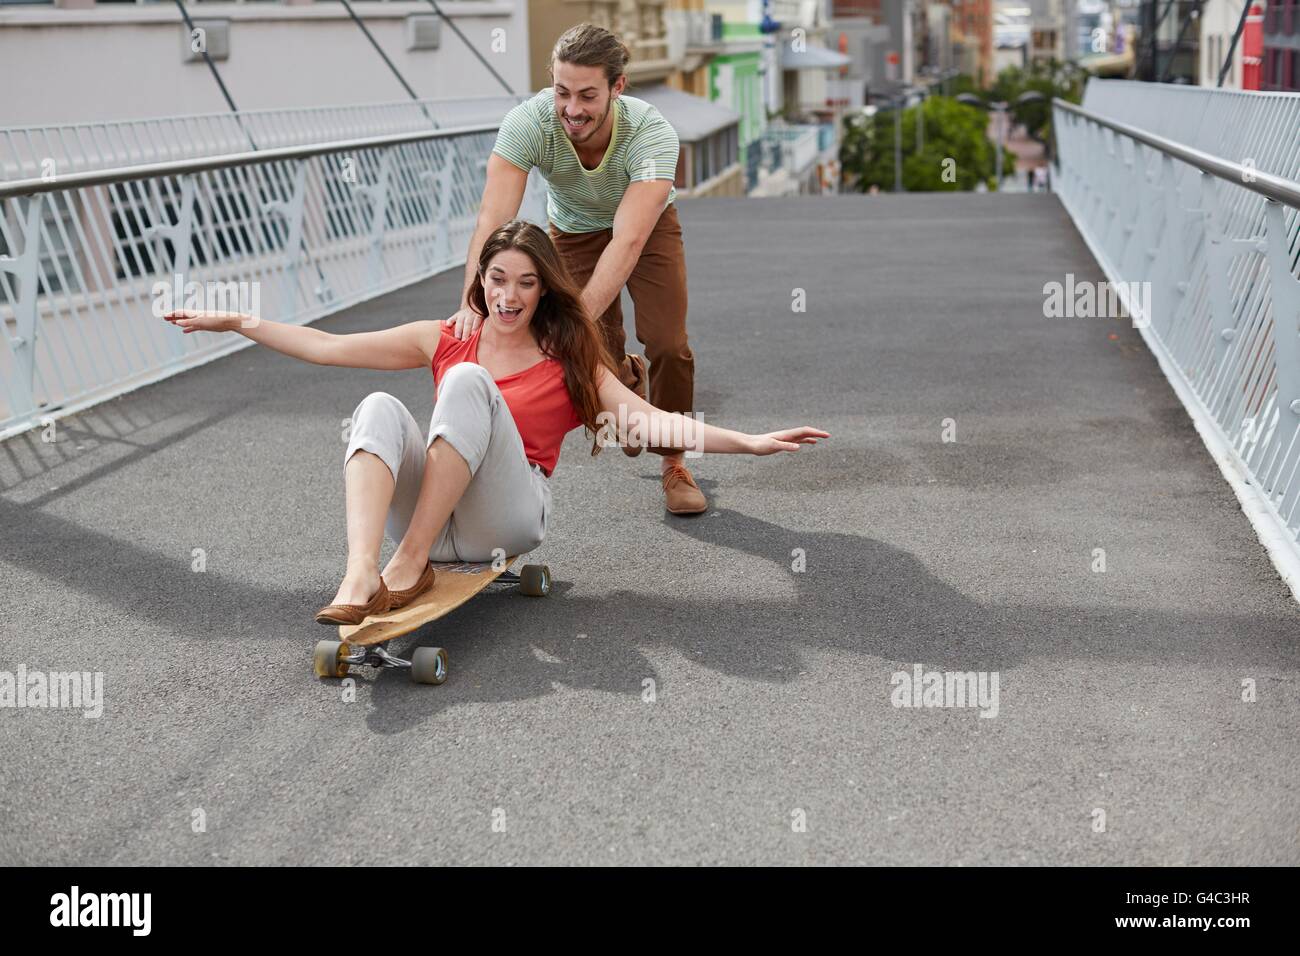 -MODELL VERÖFFENTLICHT. Junge Frau sitzt auf Skateboard mit Mann schieben. Stockfoto